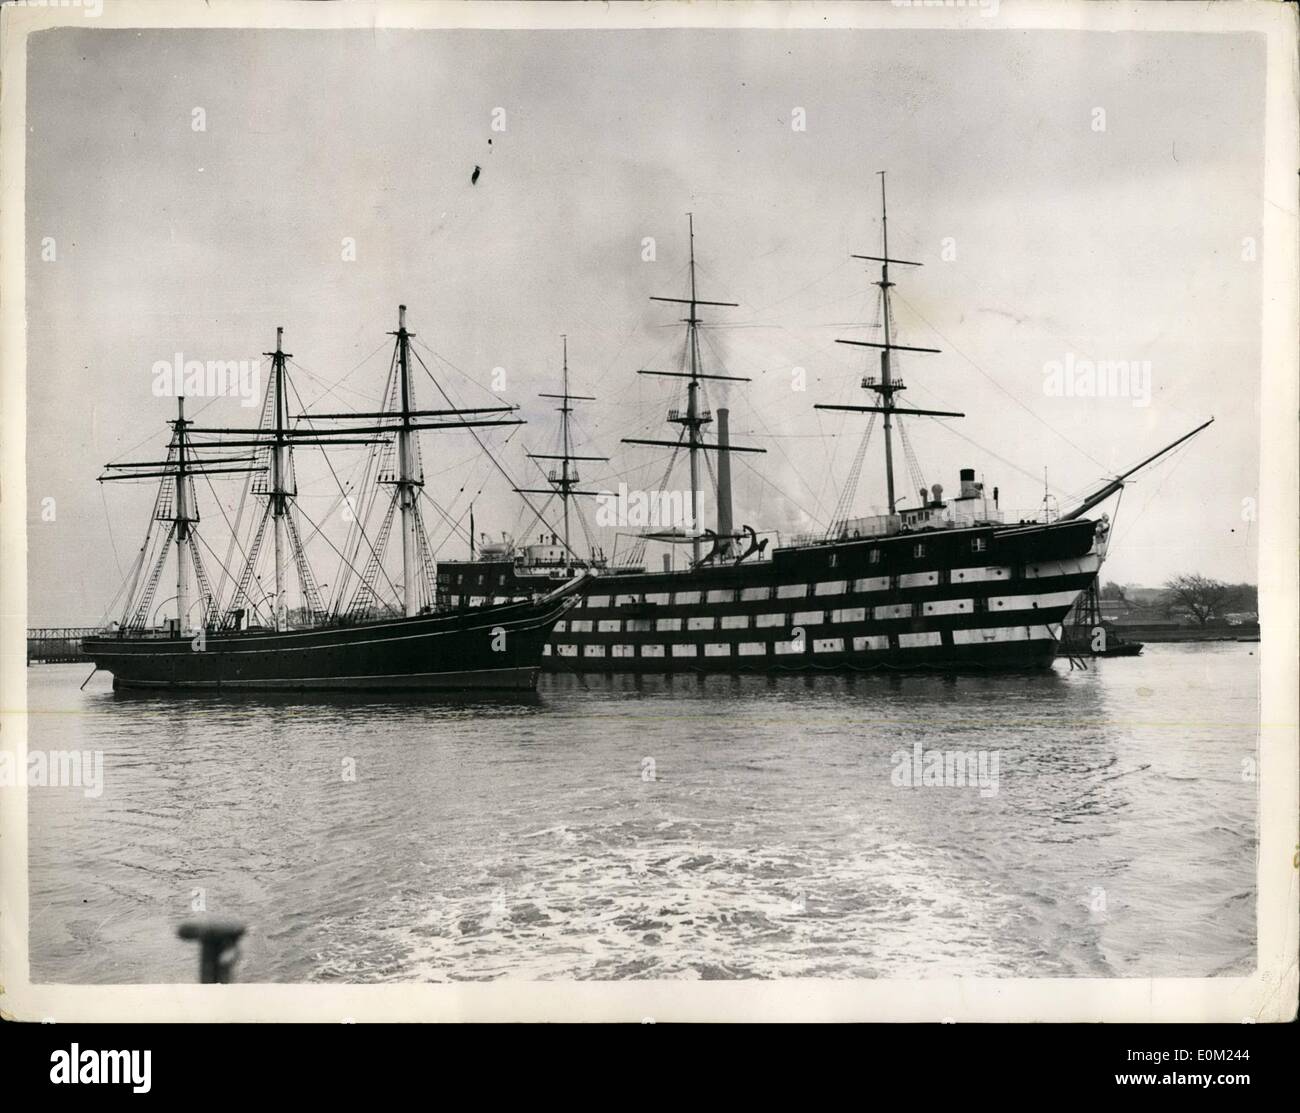 04. Apr. 1953 - Letzte Der Alten Teeschneider - In Greenhithe. Die ''Cutty Sark'' und die ''Worcester'': Die letzte der alten Tea Clippers - die ''Cutty Sark'' wird neben dem Trainingsschiff ''Worcester'' in Greenhithe vertäut - für das sie als Überlaufschiff eingesetzt wurde. Die Cutty Sark Preservation Society appelliert an geschätzte 250,000, um die dauerhafte Erhaltung des Schiffes in Greenwich zu ermöglichen und TOE eine Reihe von Cutty Sark Bursarys einzurichten, um jungen Männern die Ausbildung zu ermöglichen und sich als Offiziere der Handelsmarine zu qualifizieren Stockfoto